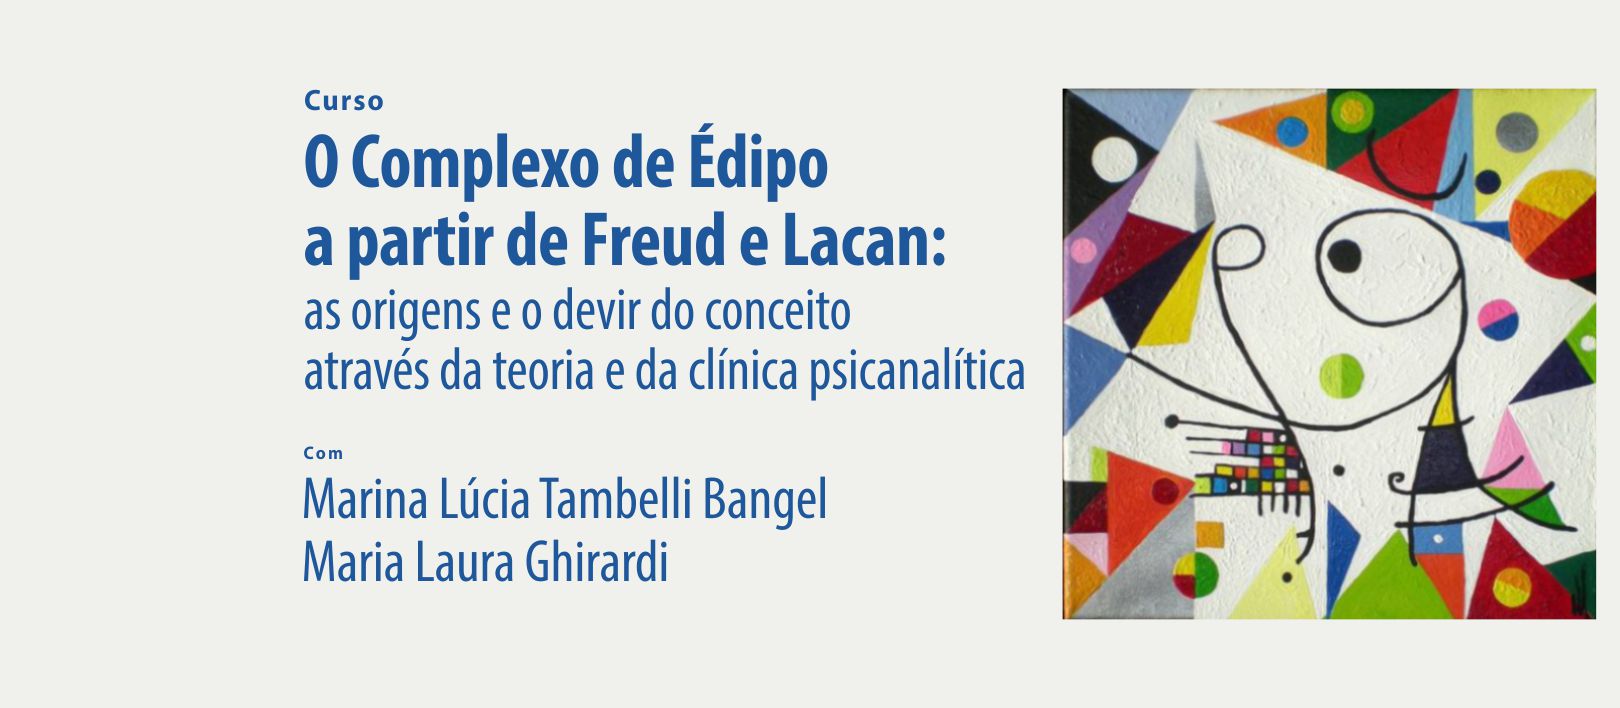 O Complexo de Édipo a partir de Freud e Lacan: as origens e o devir do conceito através da teoria e da clínica psicanalítica